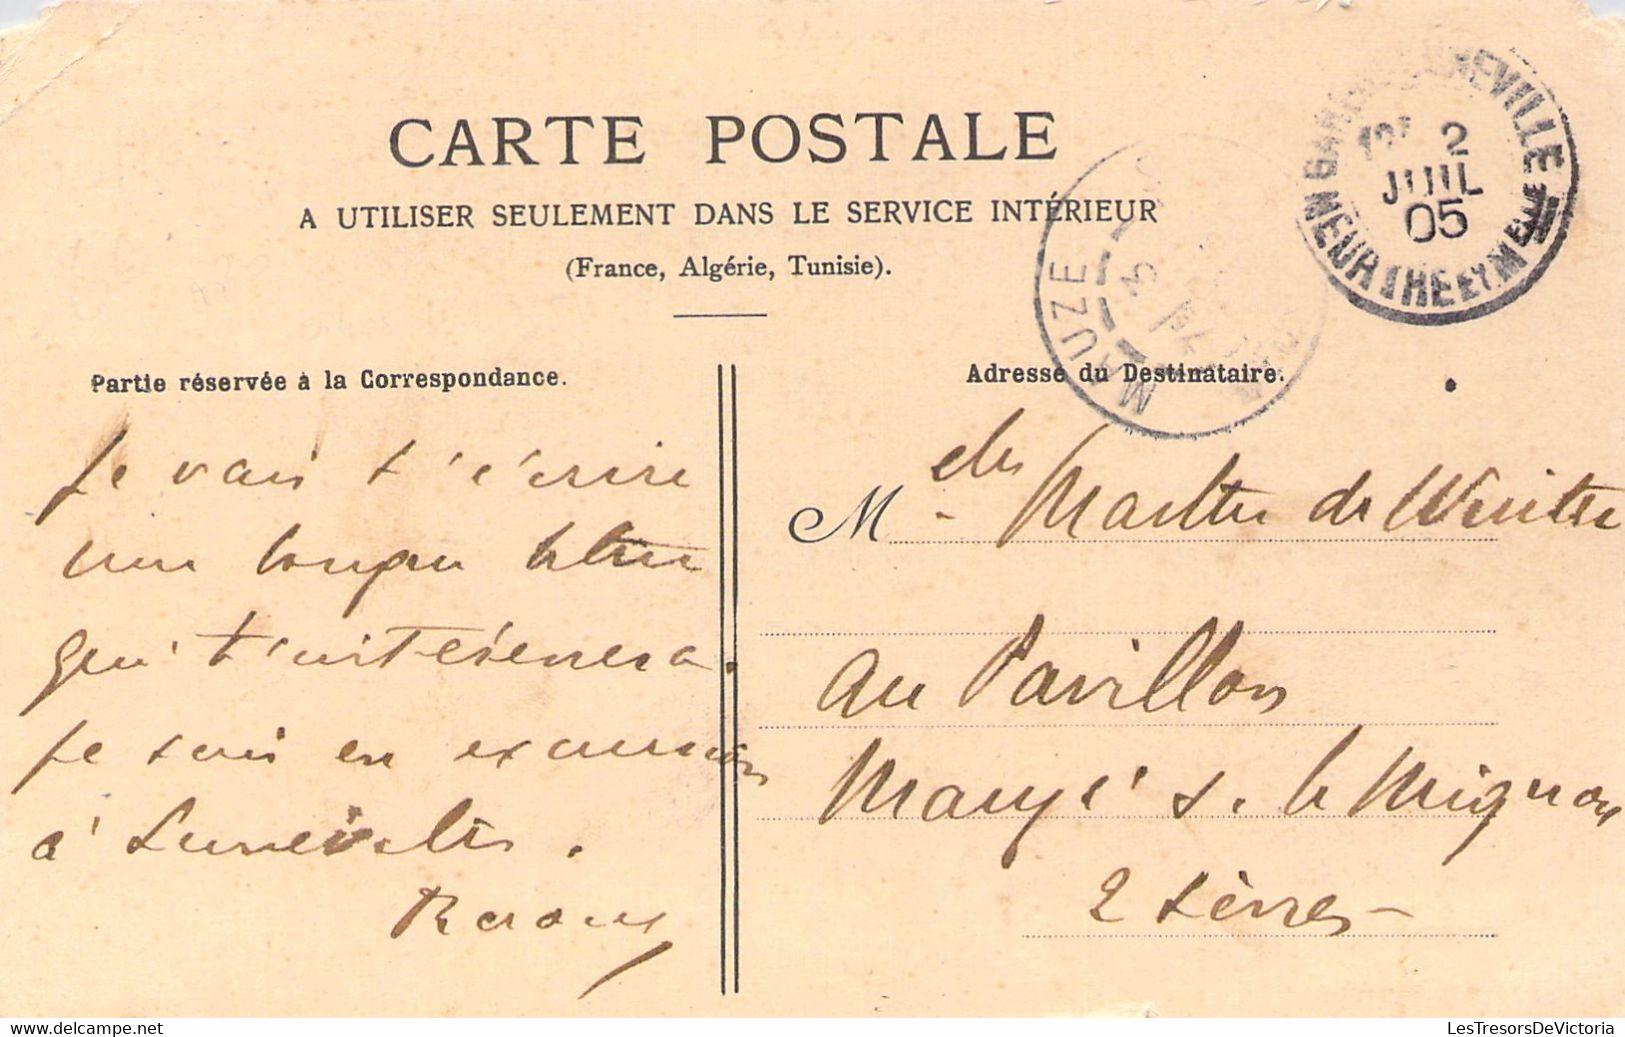 FRANCE - 54 - LUNEVILLE - Passage De Rivière Au Pont De Moncel - Artillerie De La 2 - Militaria - Carte Postale Ancienne - Luneville